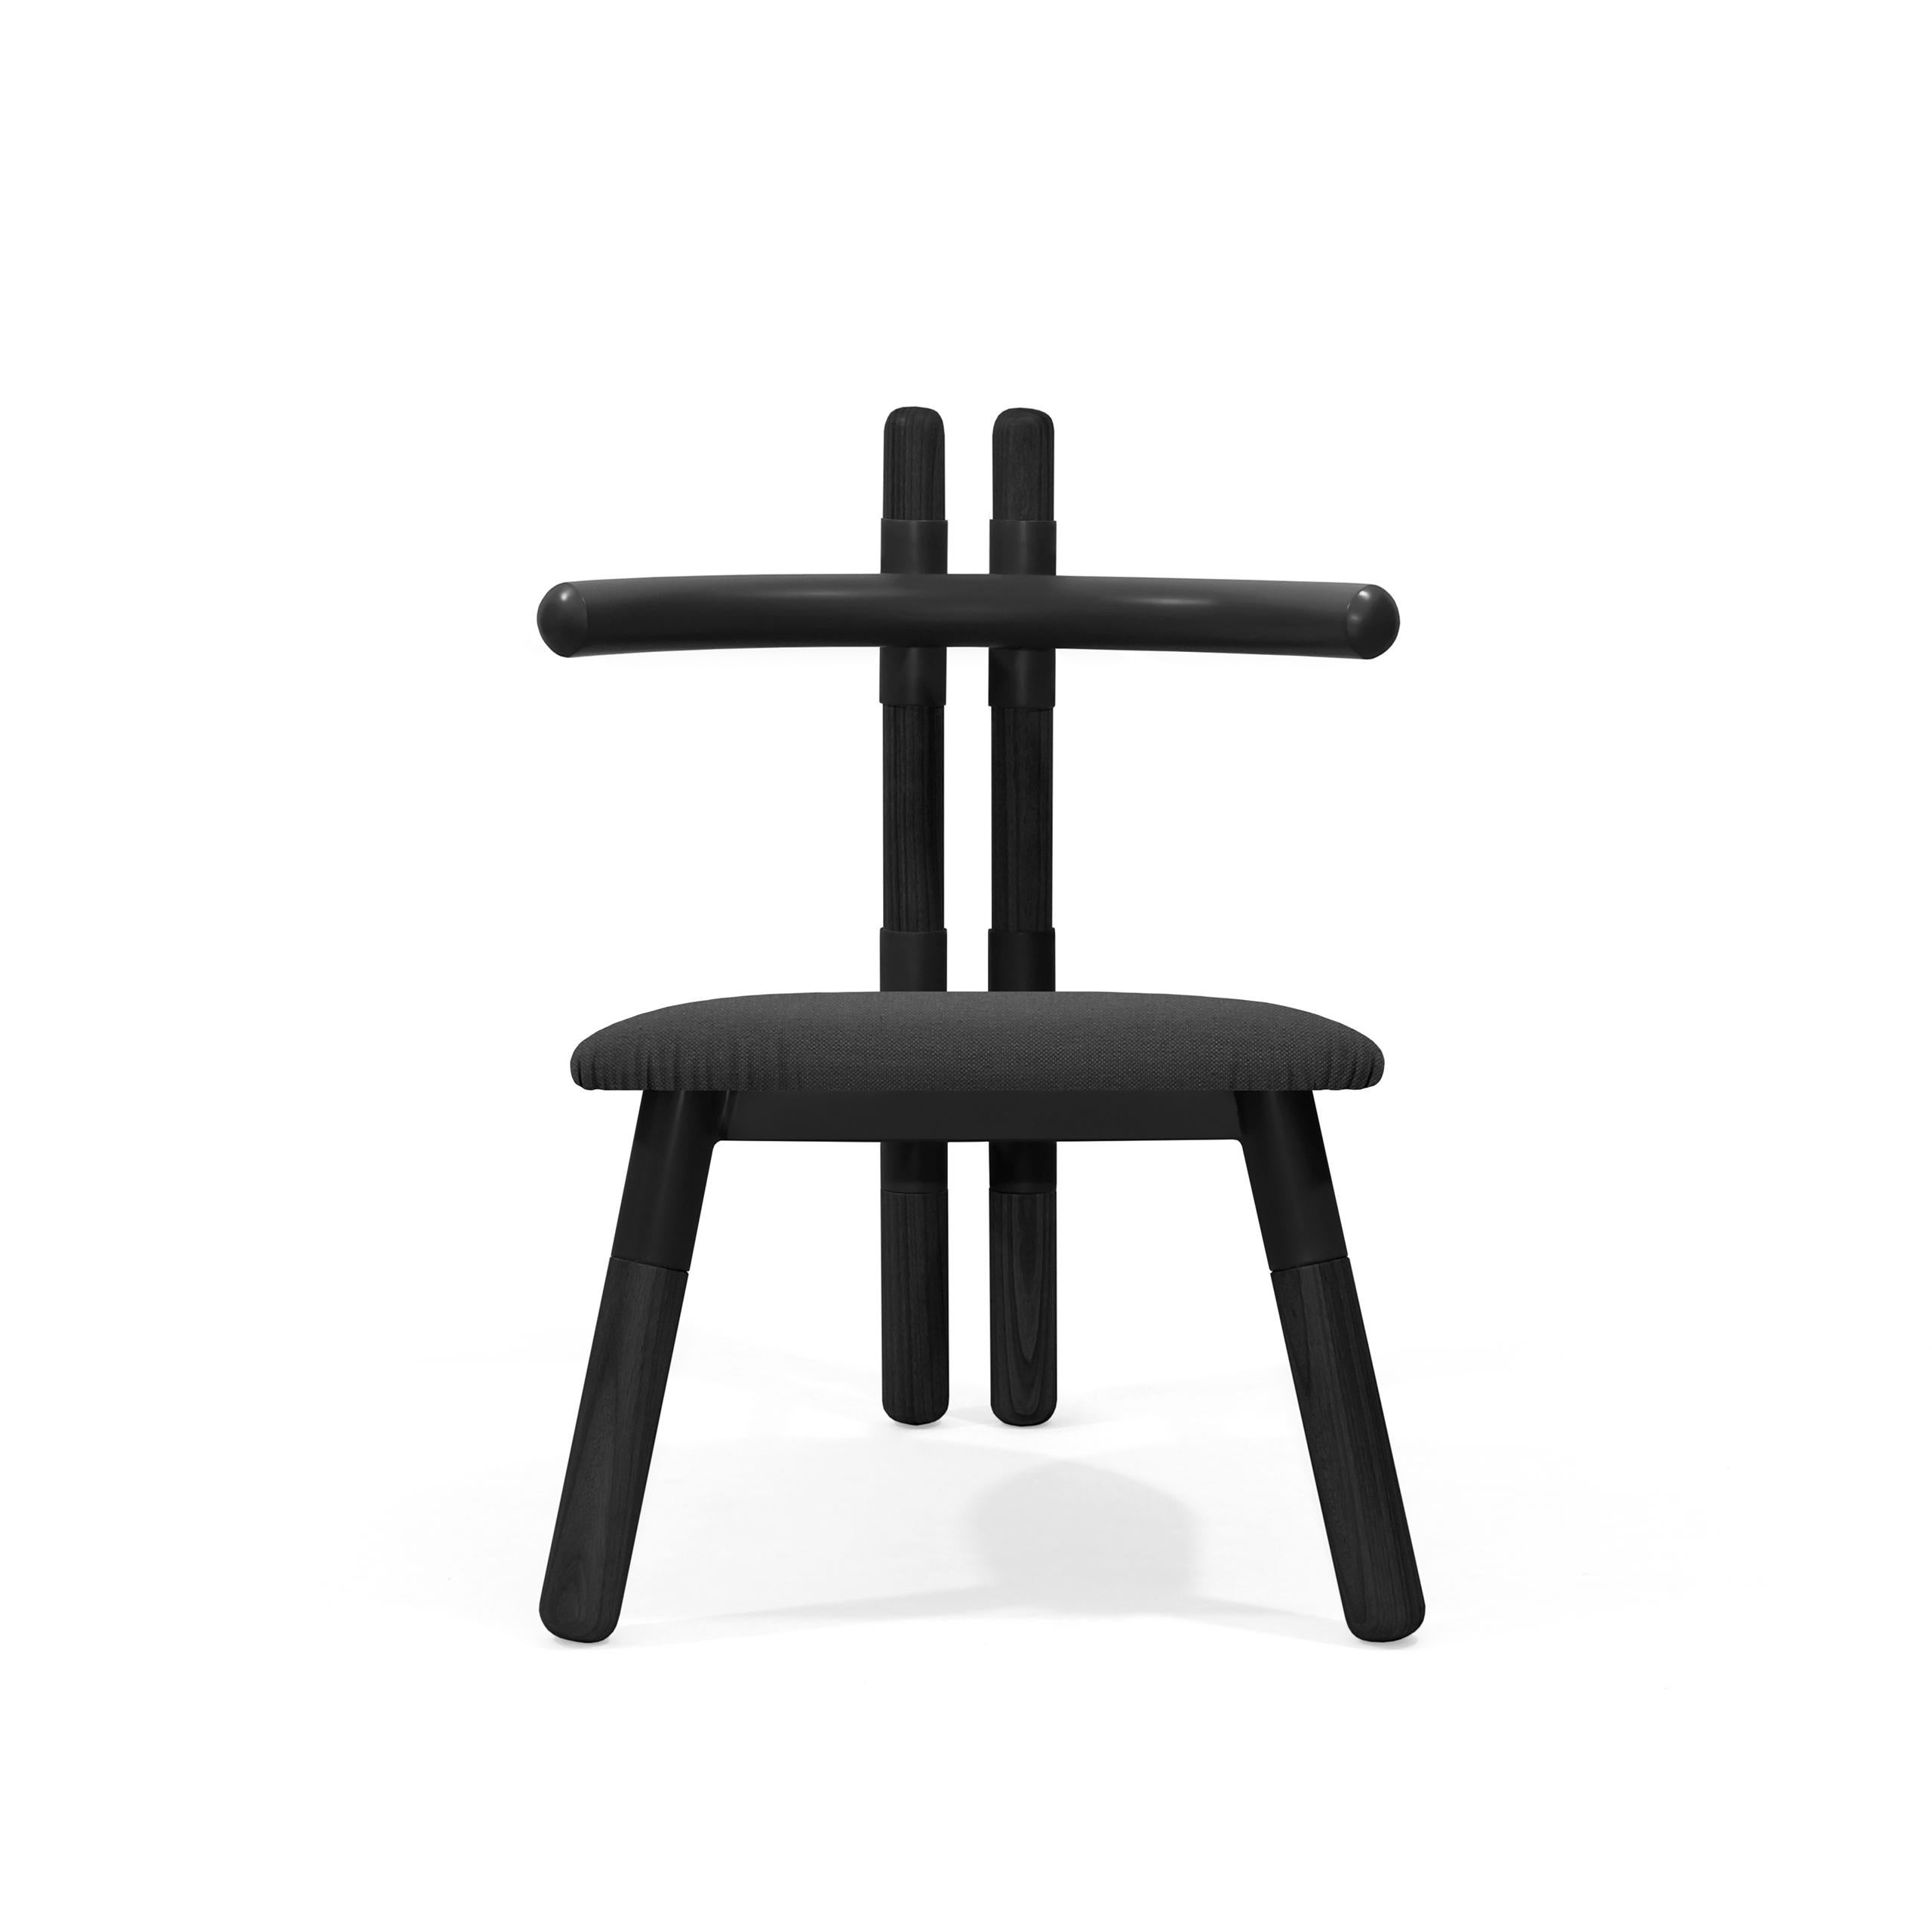 Der Sessel PK13 ist von den Holzbindern inspiriert, die bei der Konstruktion von Dächern verwendet werden.
Die Stuhlmuffen beziehen sich auf die 